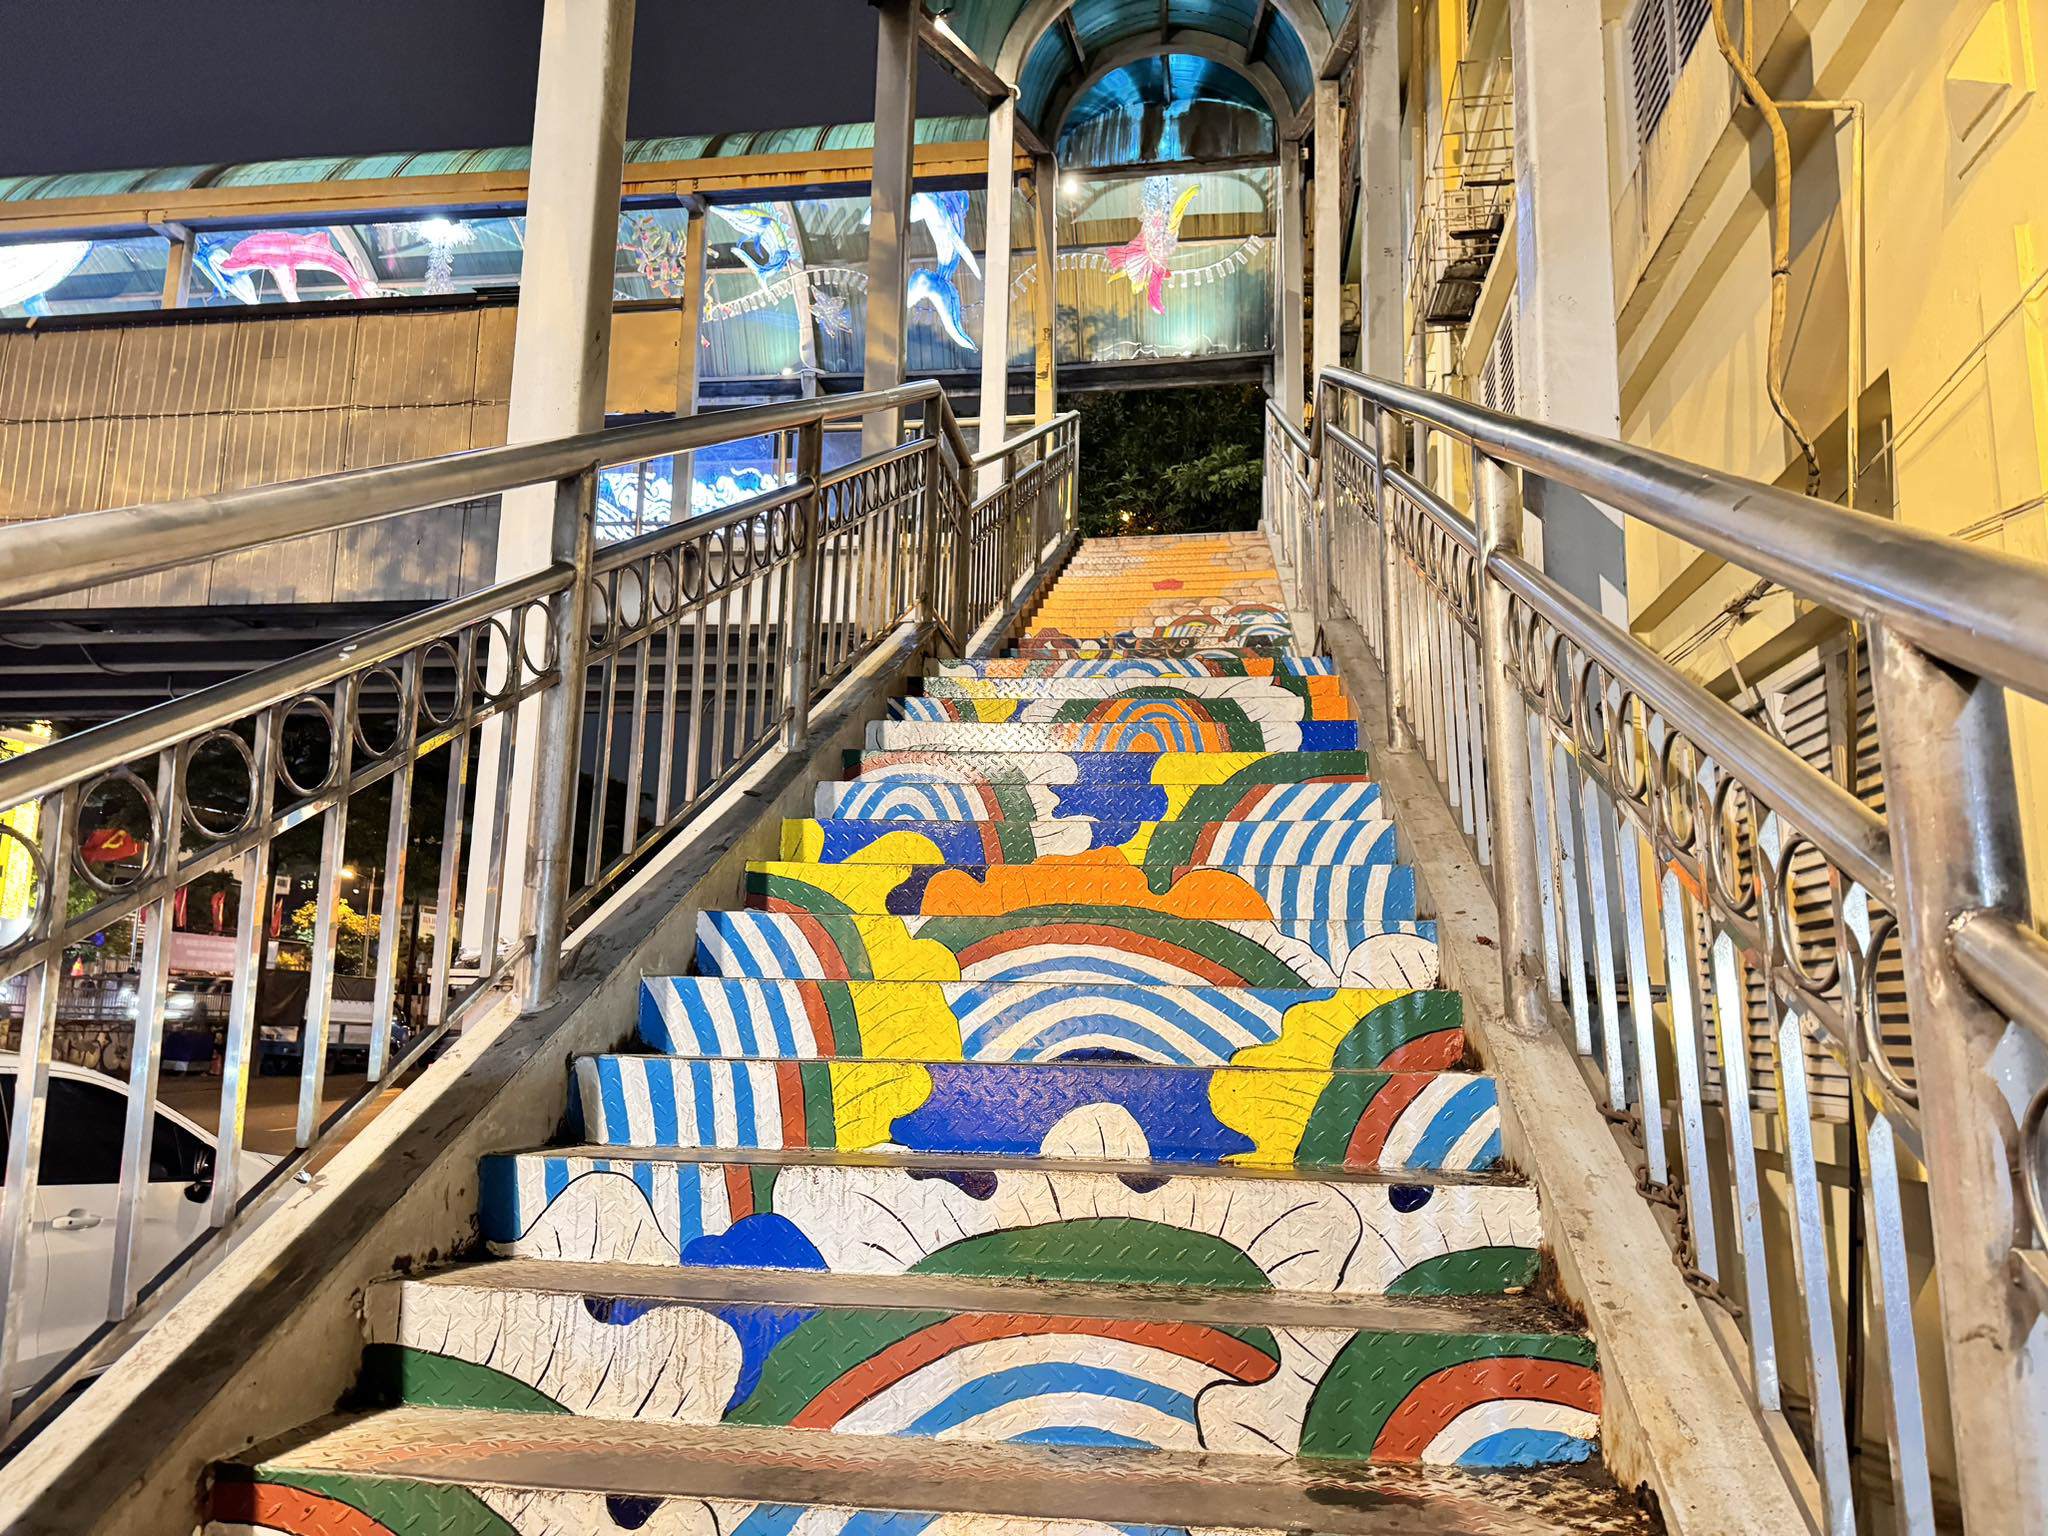 Phía chân cầu thang đi bộ từ cả hai hướng được họa sỹ vẽ các bức tranh “Cá chép vượt vũ môn” từ kho tàng tranh dân gian Hàng Trống…